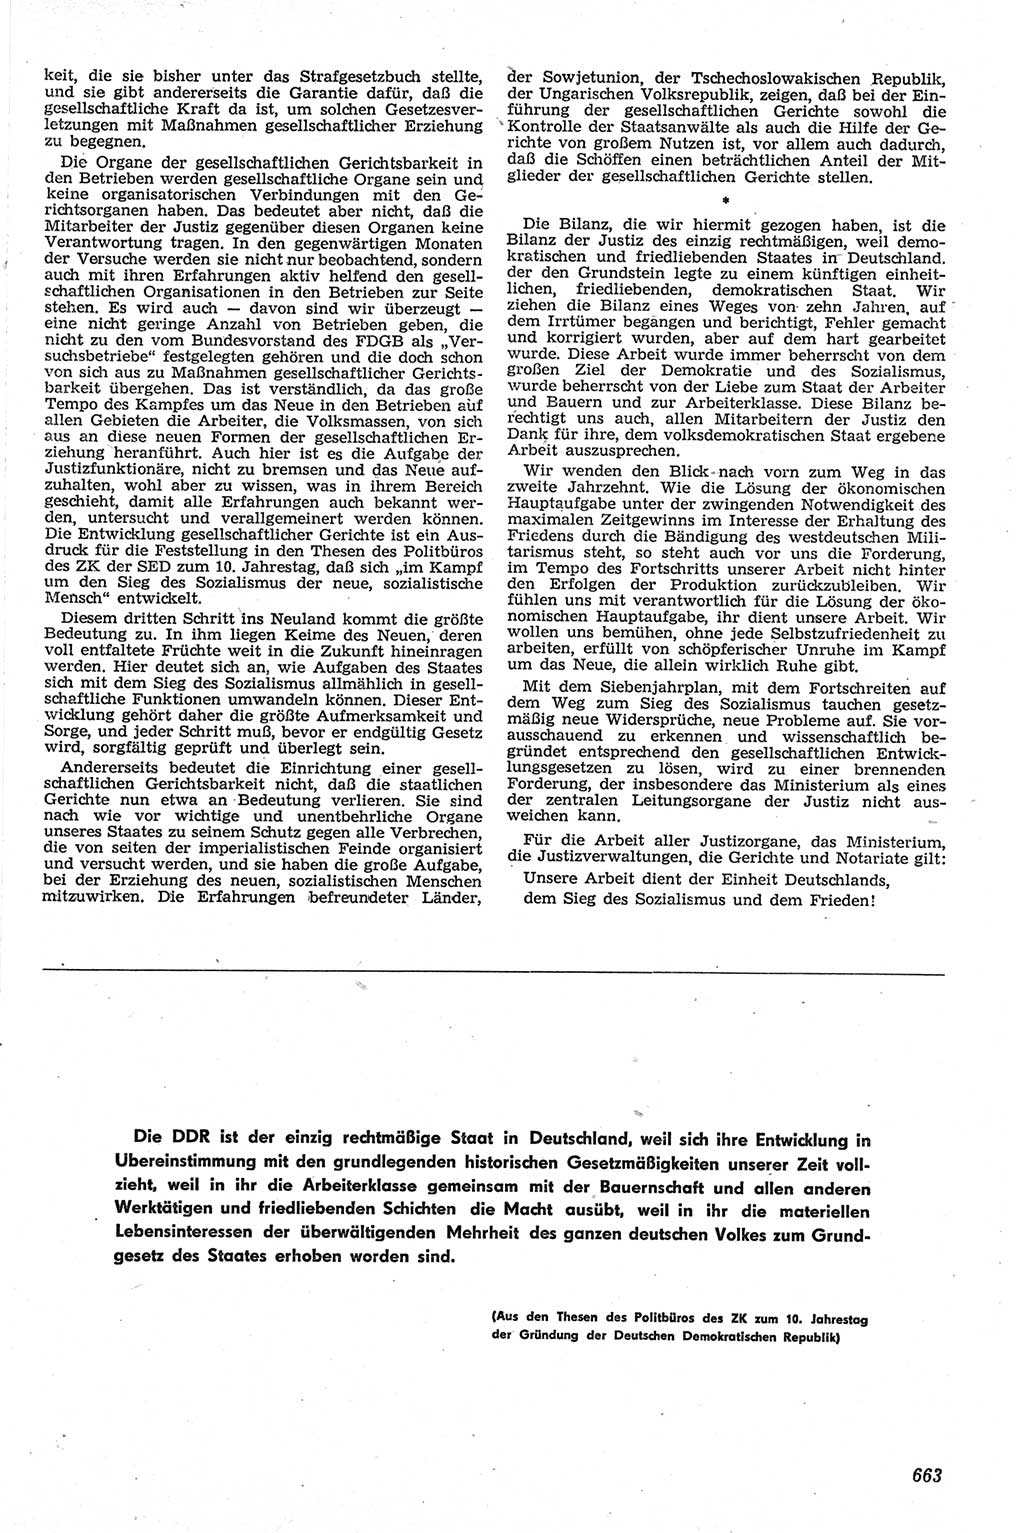 Neue Justiz (NJ), Zeitschrift für Recht und Rechtswissenschaft [Deutsche Demokratische Republik (DDR)], 13. Jahrgang 1959, Seite 663 (NJ DDR 1959, S. 663)